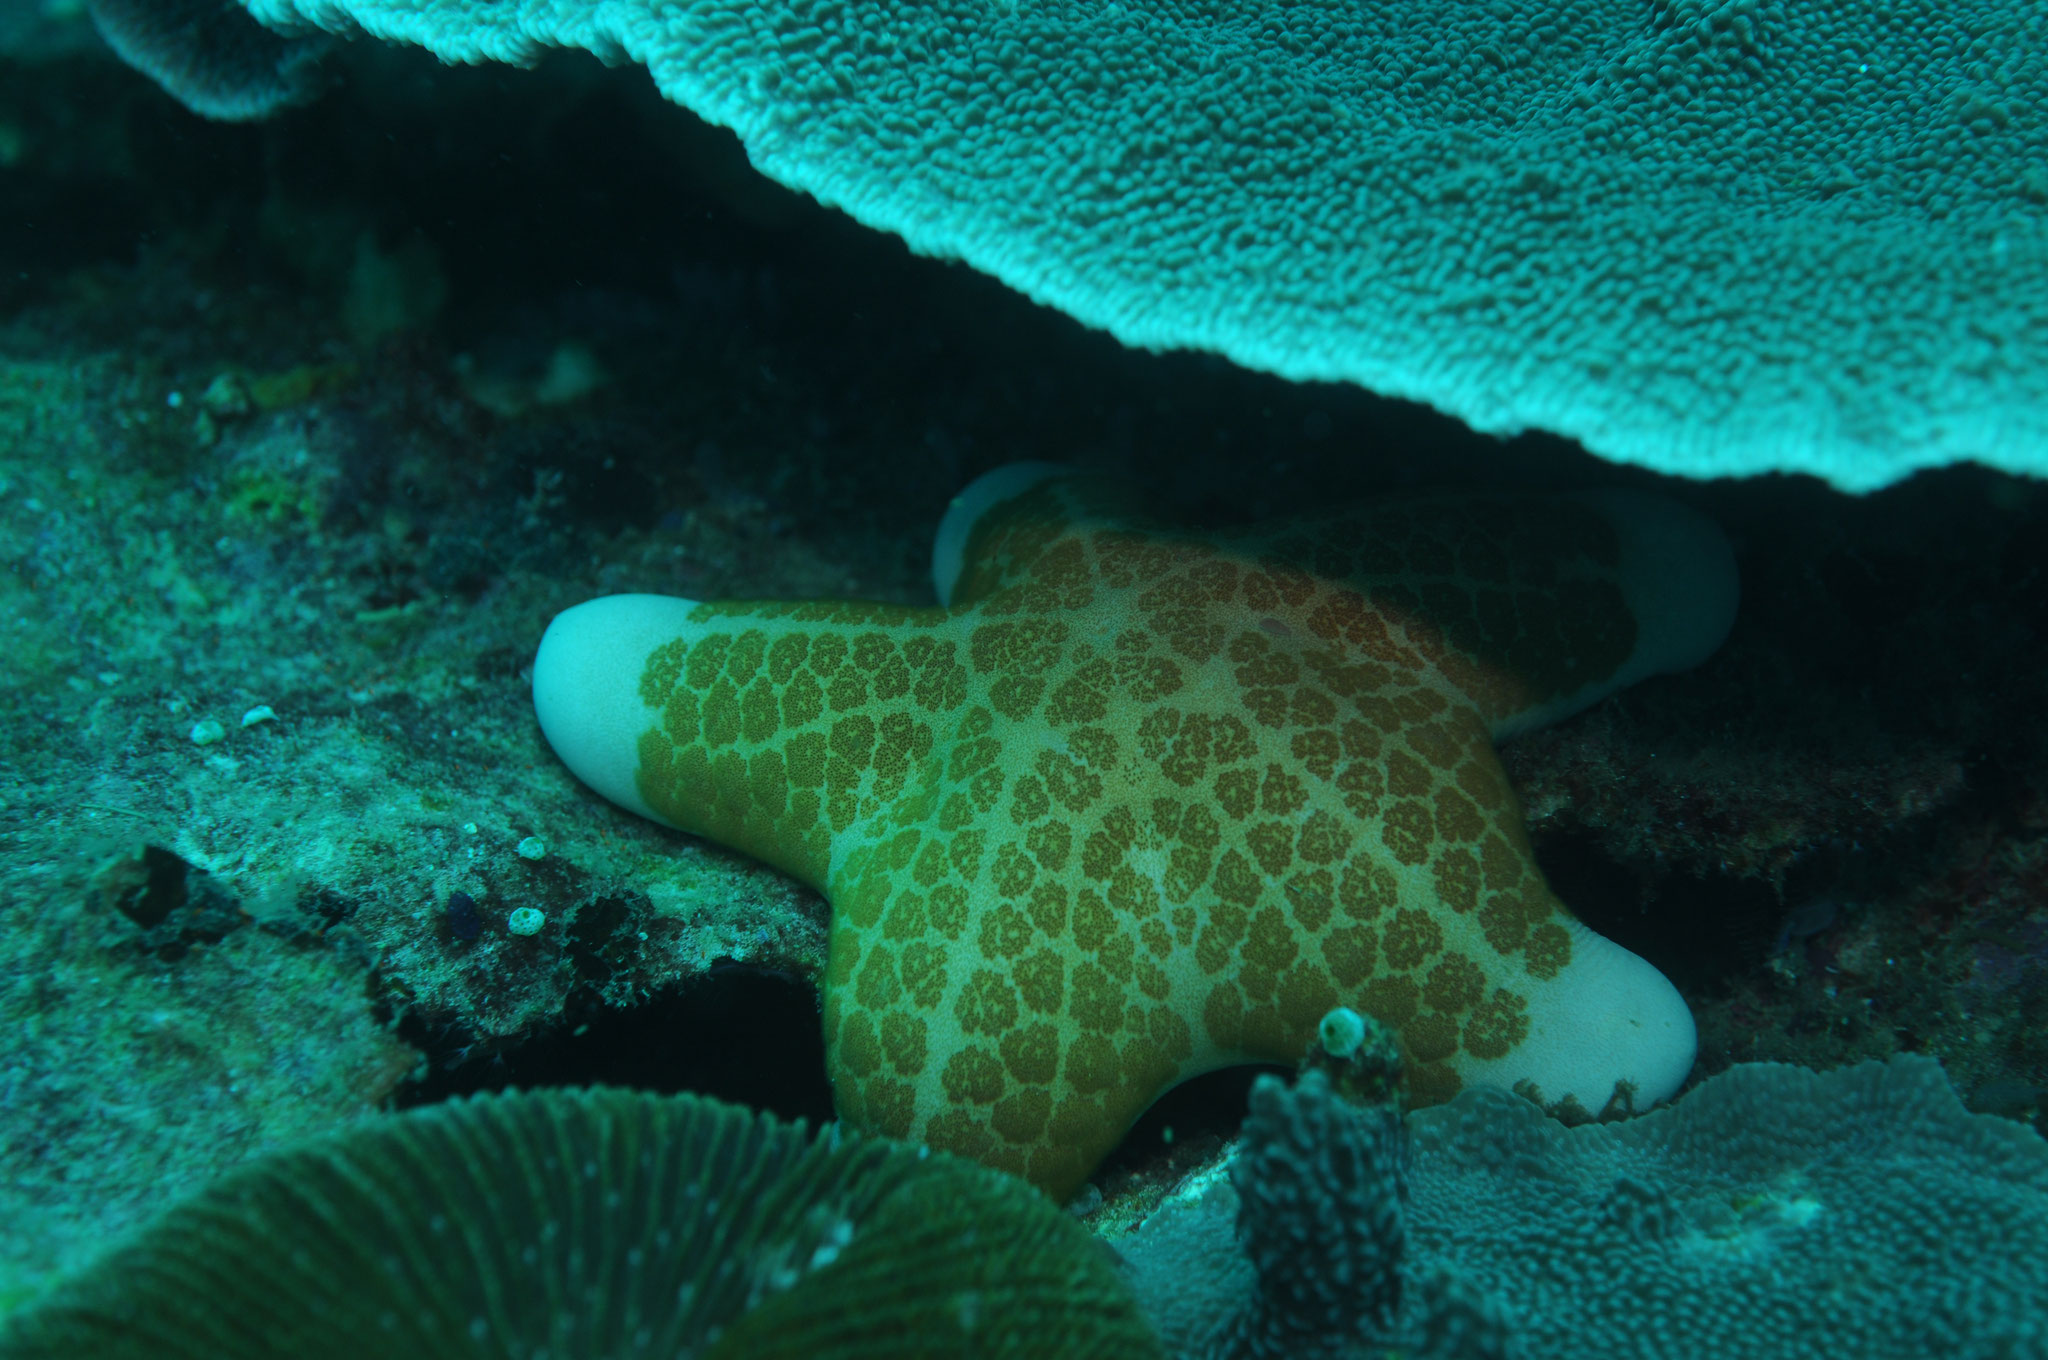 étoile de mer (choriaster granulatus) Negros orientales Philippines  